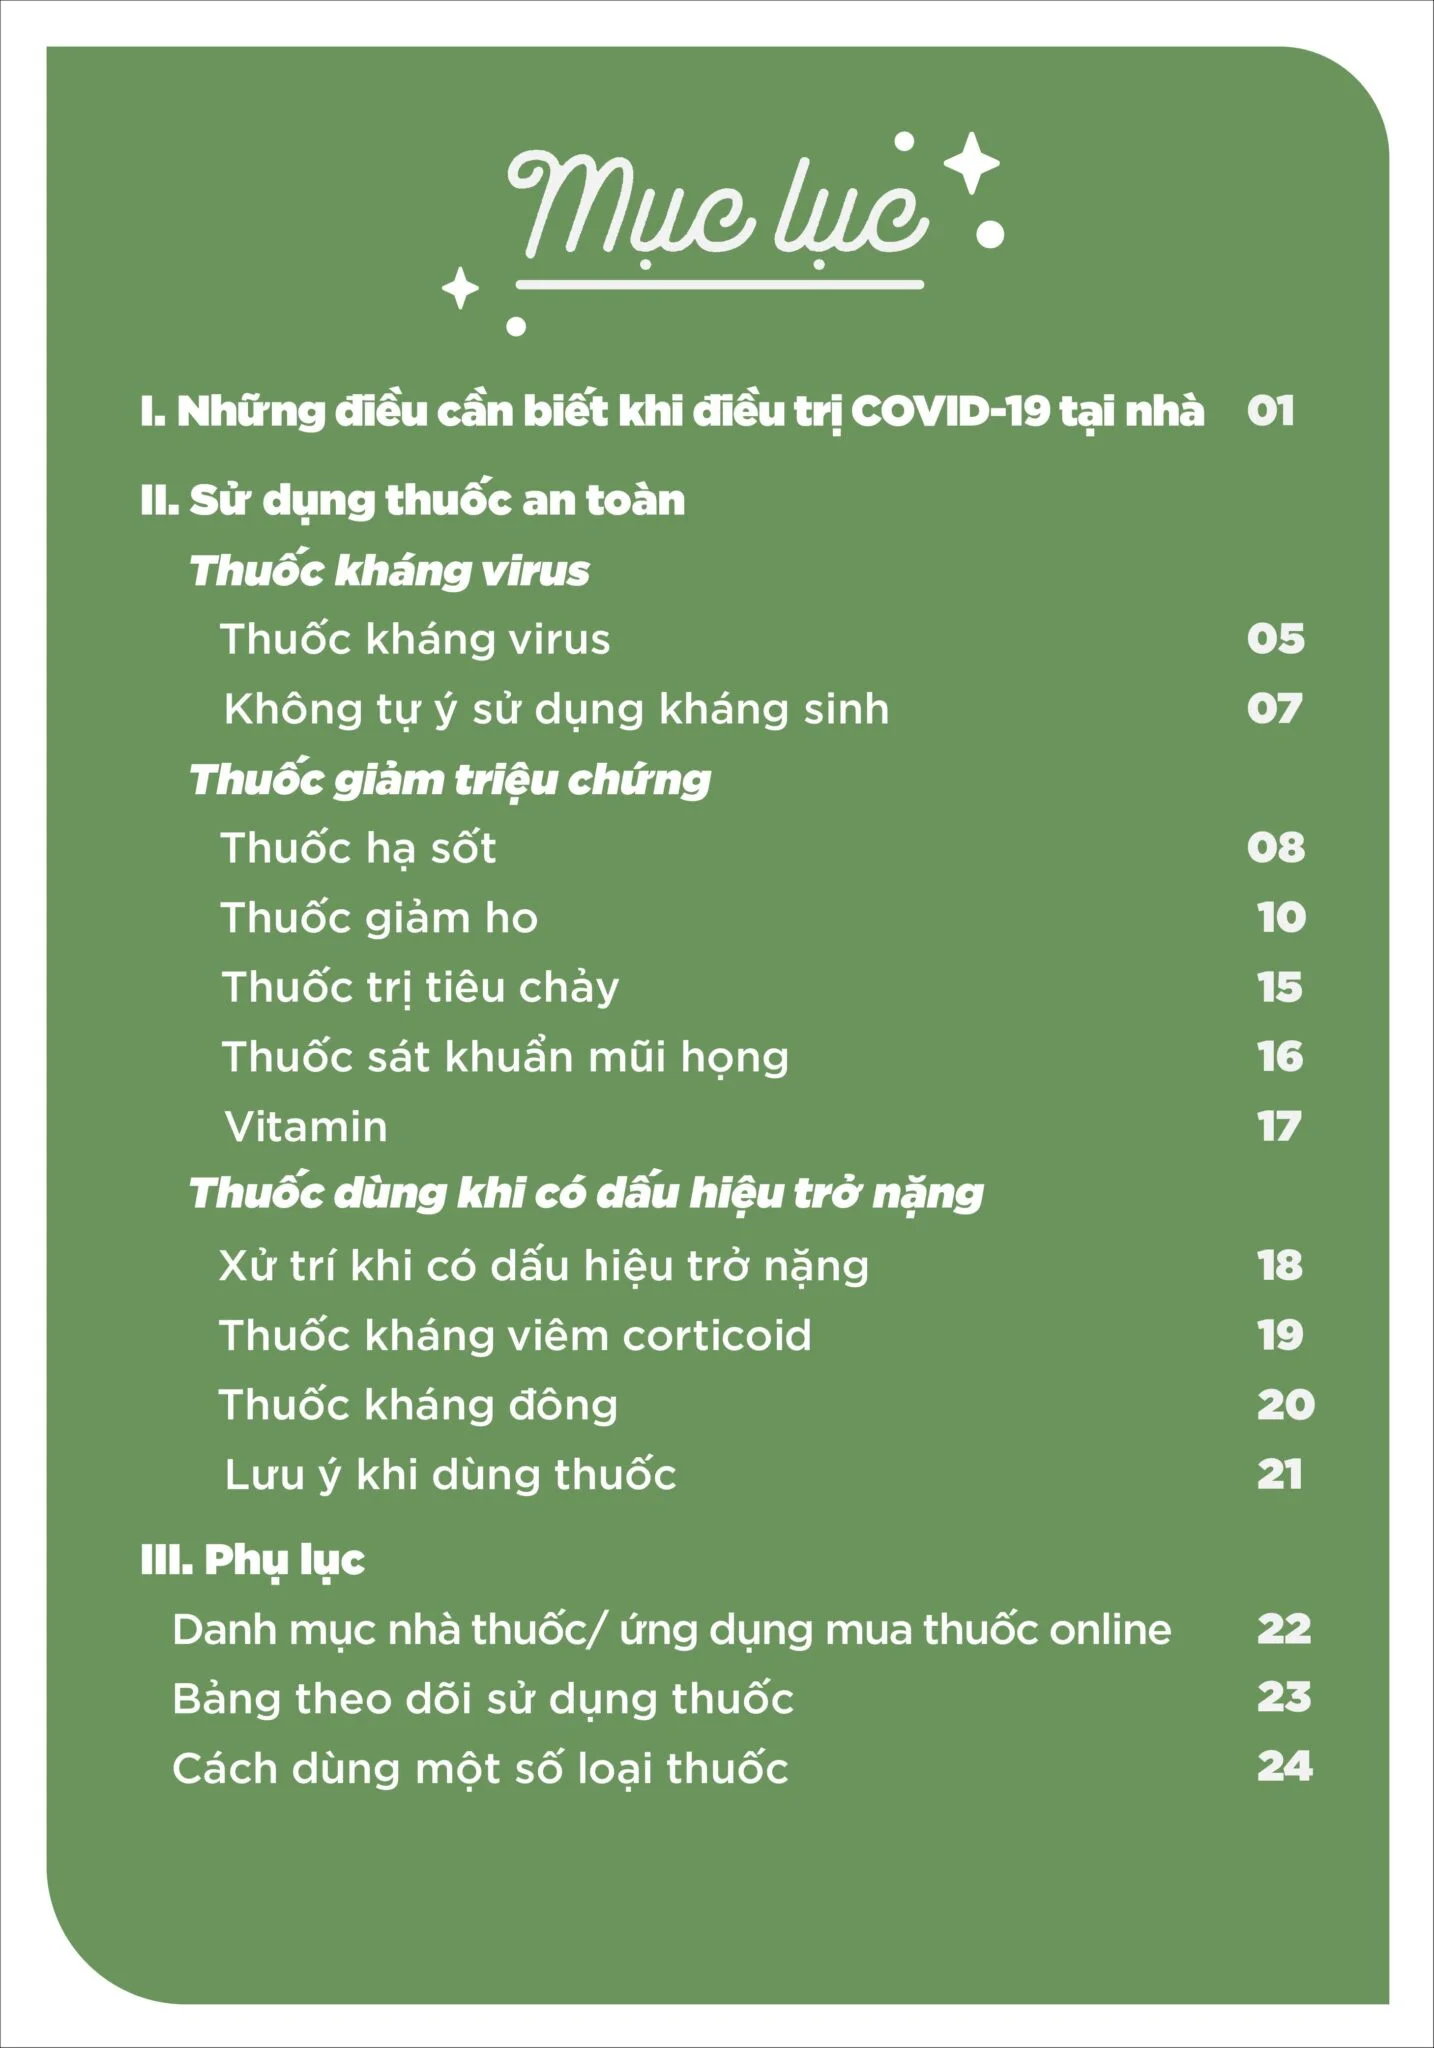 Nội dung chính trong Sổ tay “Sử dụng thuốc an toàn tại nhà cho người nhiễm COVID-19” cập nhật mới nhất tháng 3/2022.